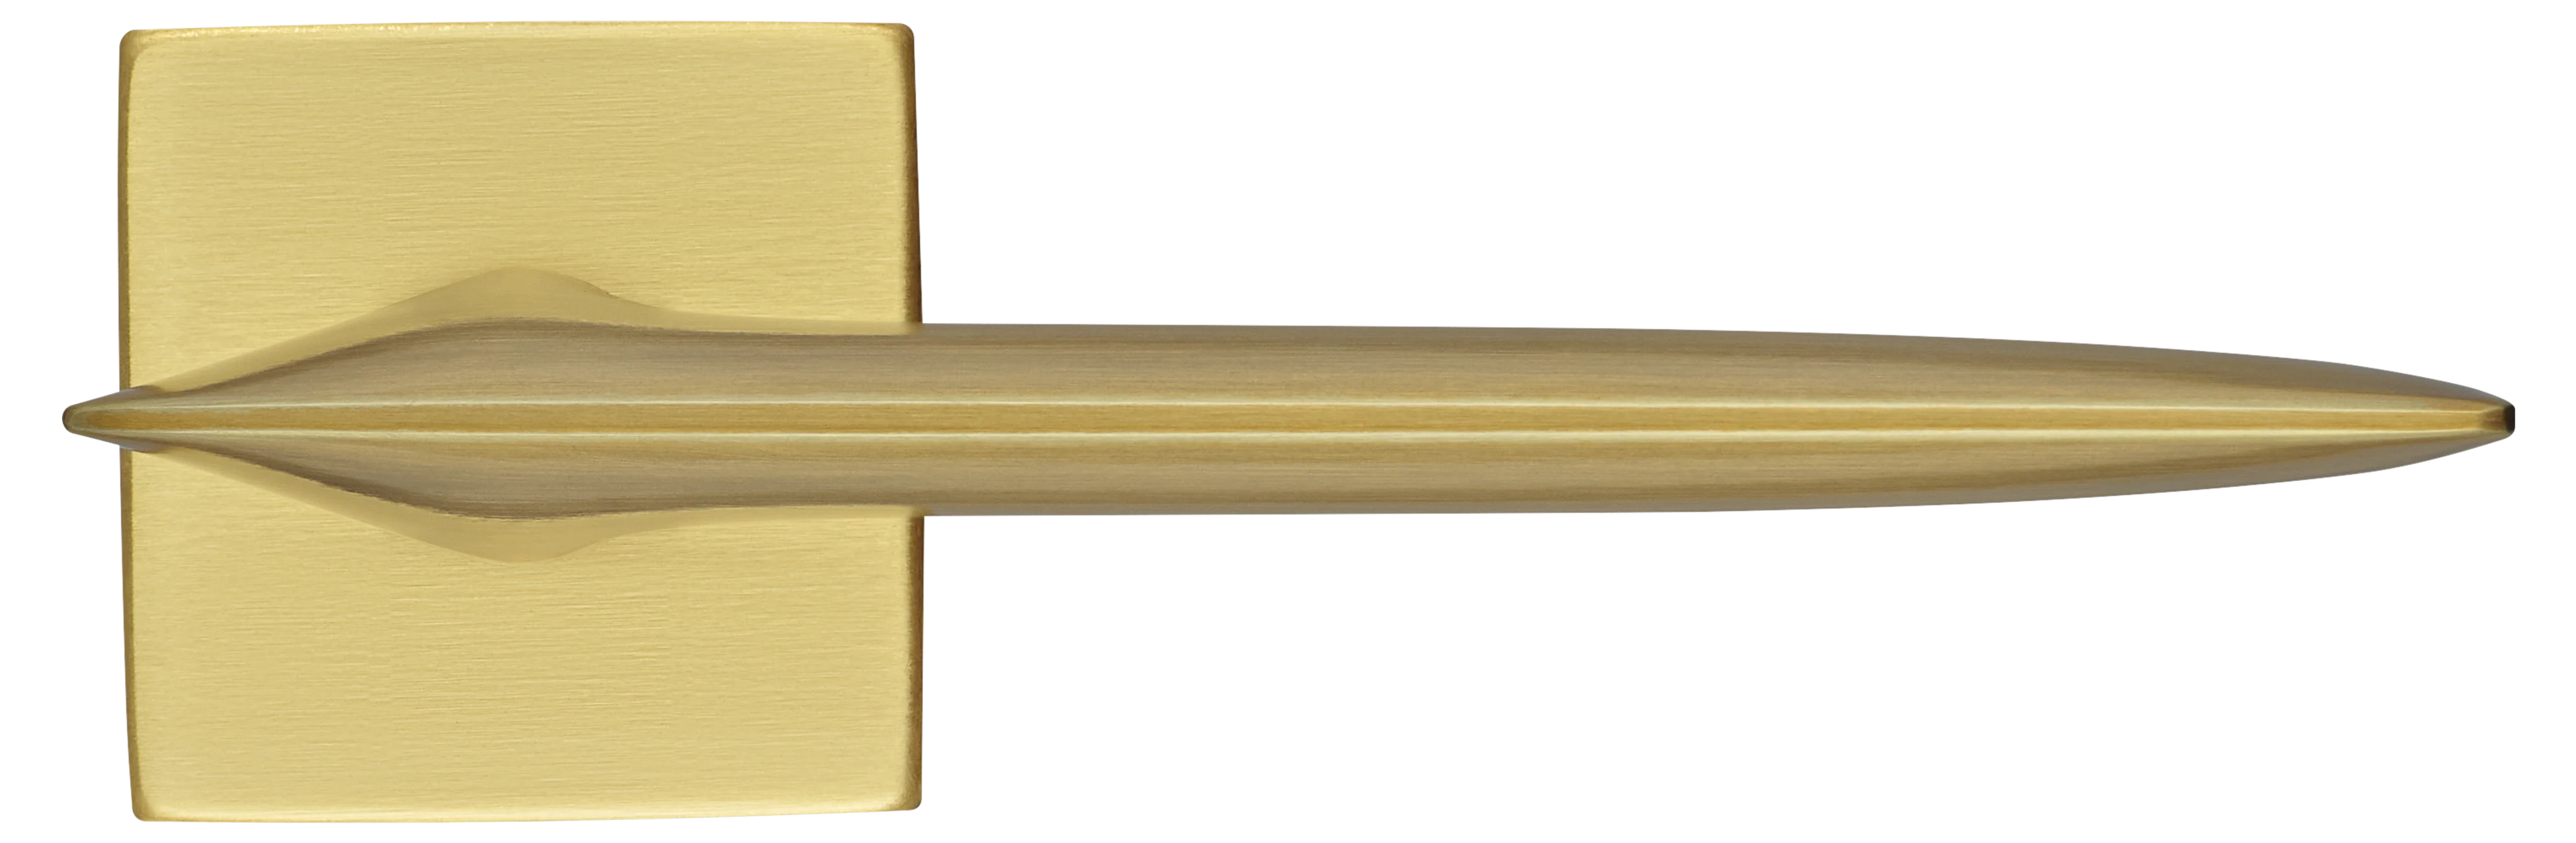 GALACTIC S5 OSA, ручка дверная, цвет -  матовое золото фото купить в Чебоксарах